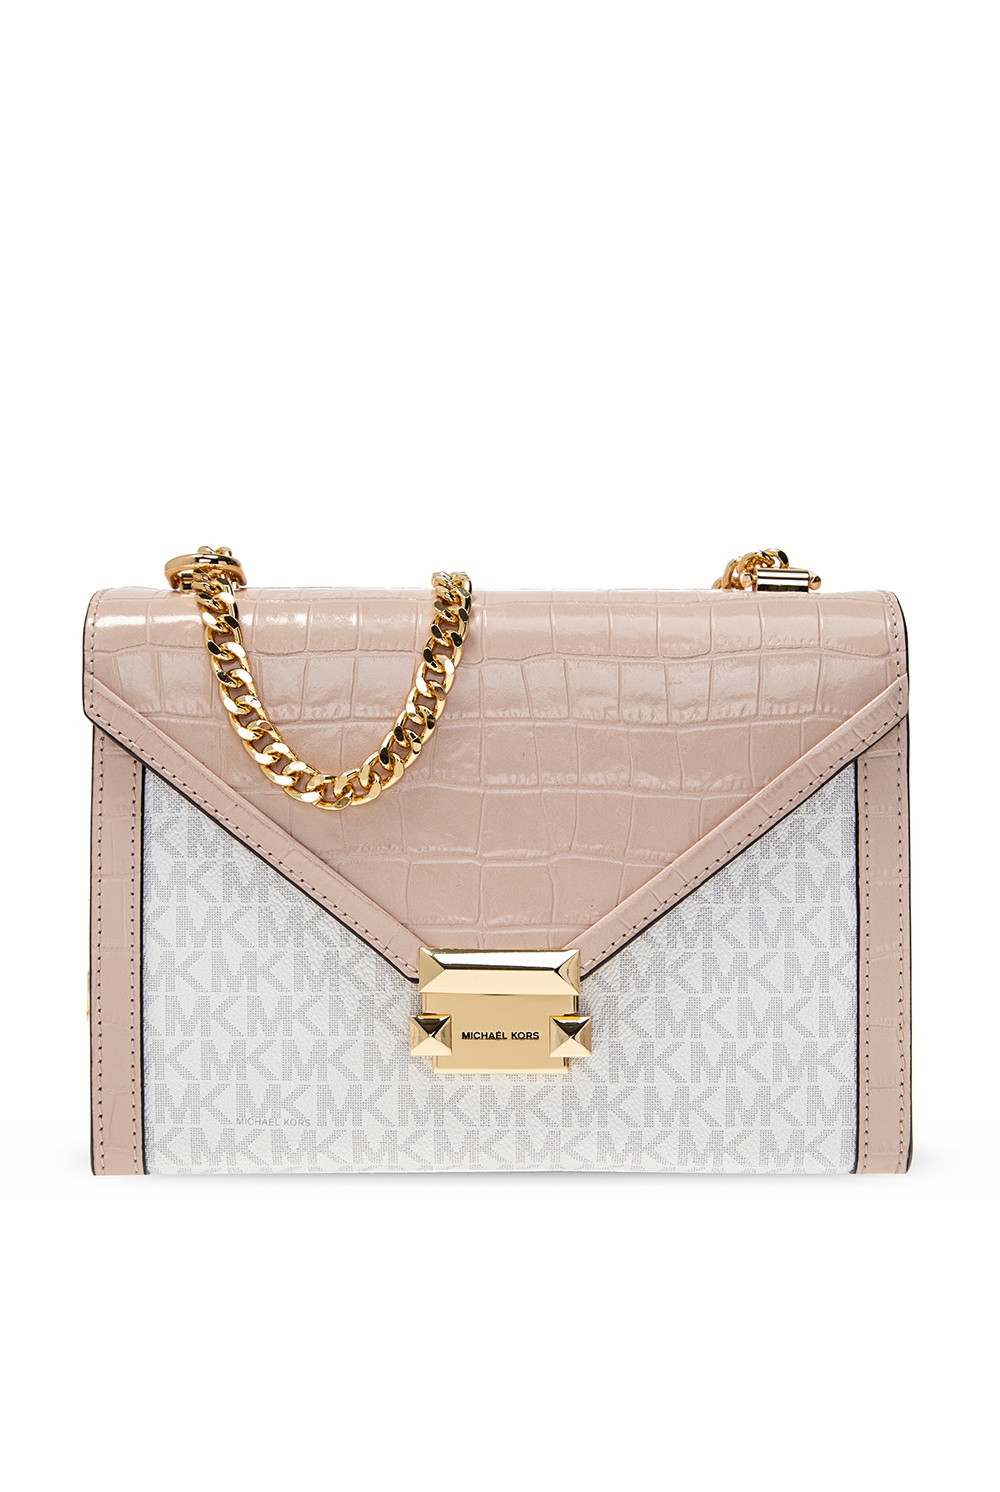 Whitney Michael Kors Handbags for Women  Vestiaire Collective